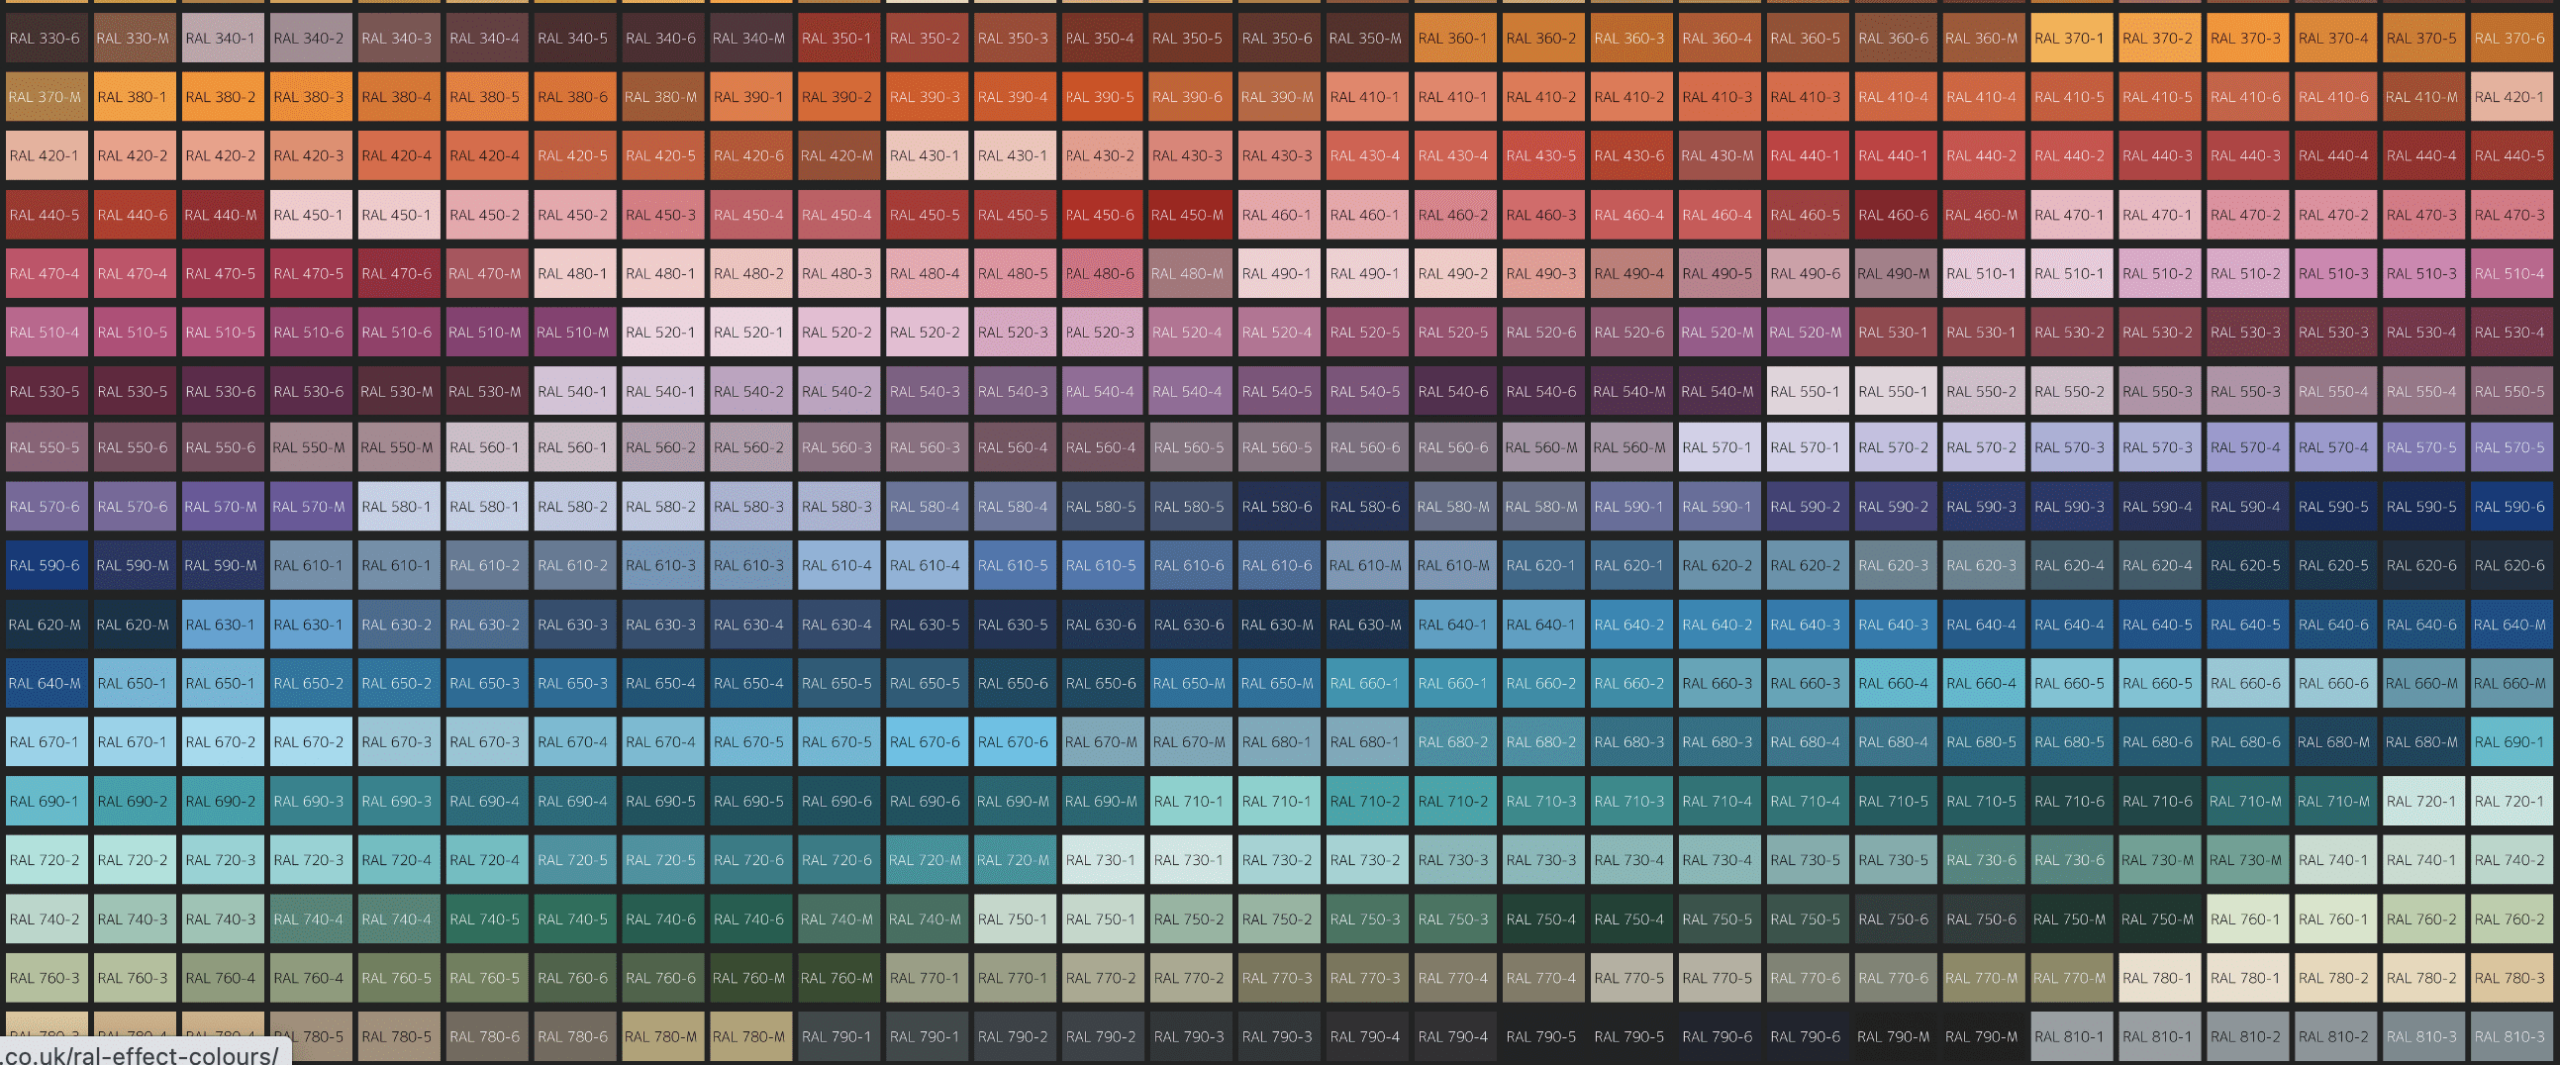 RAL colour chart